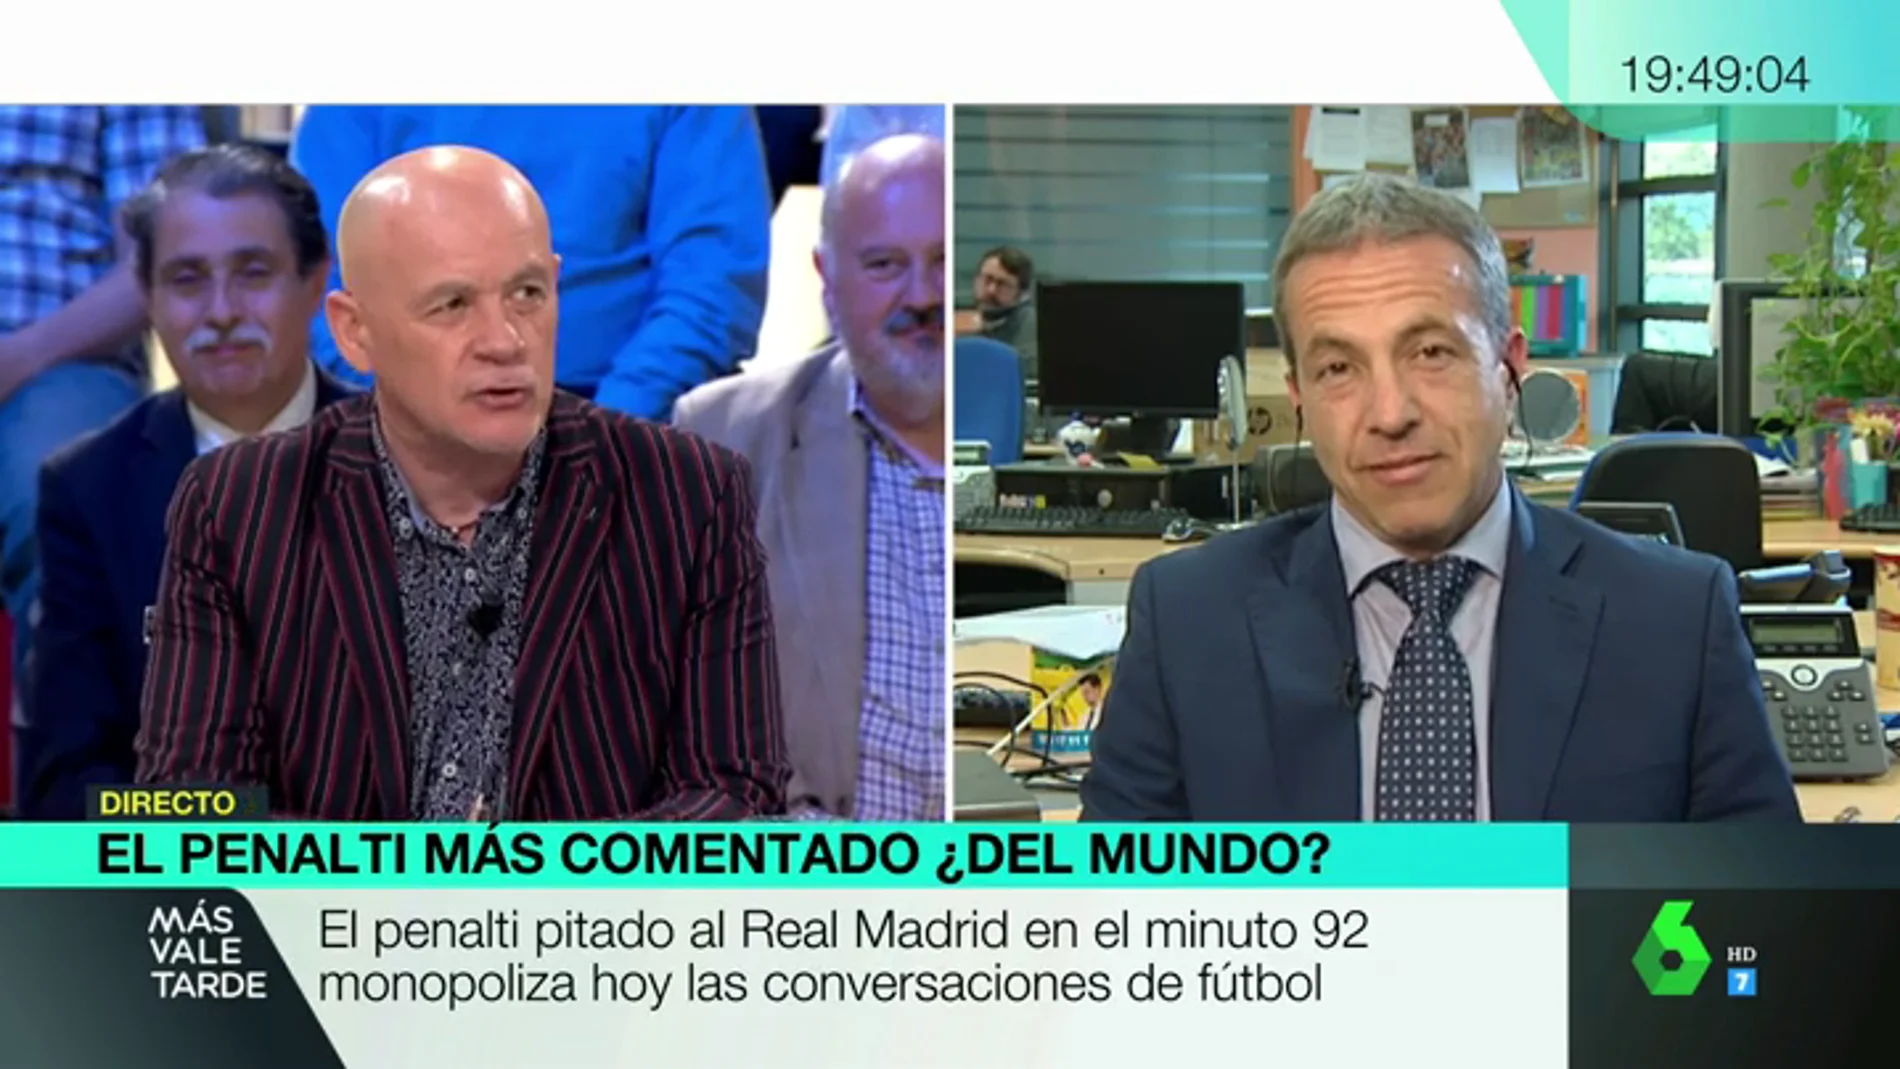 Cara a cara entre Alfredo Duro y Cristóbal Soria por el penalti al Madrid: "Aquí afloran ahora las frustraciones, la rabia y la bilis"